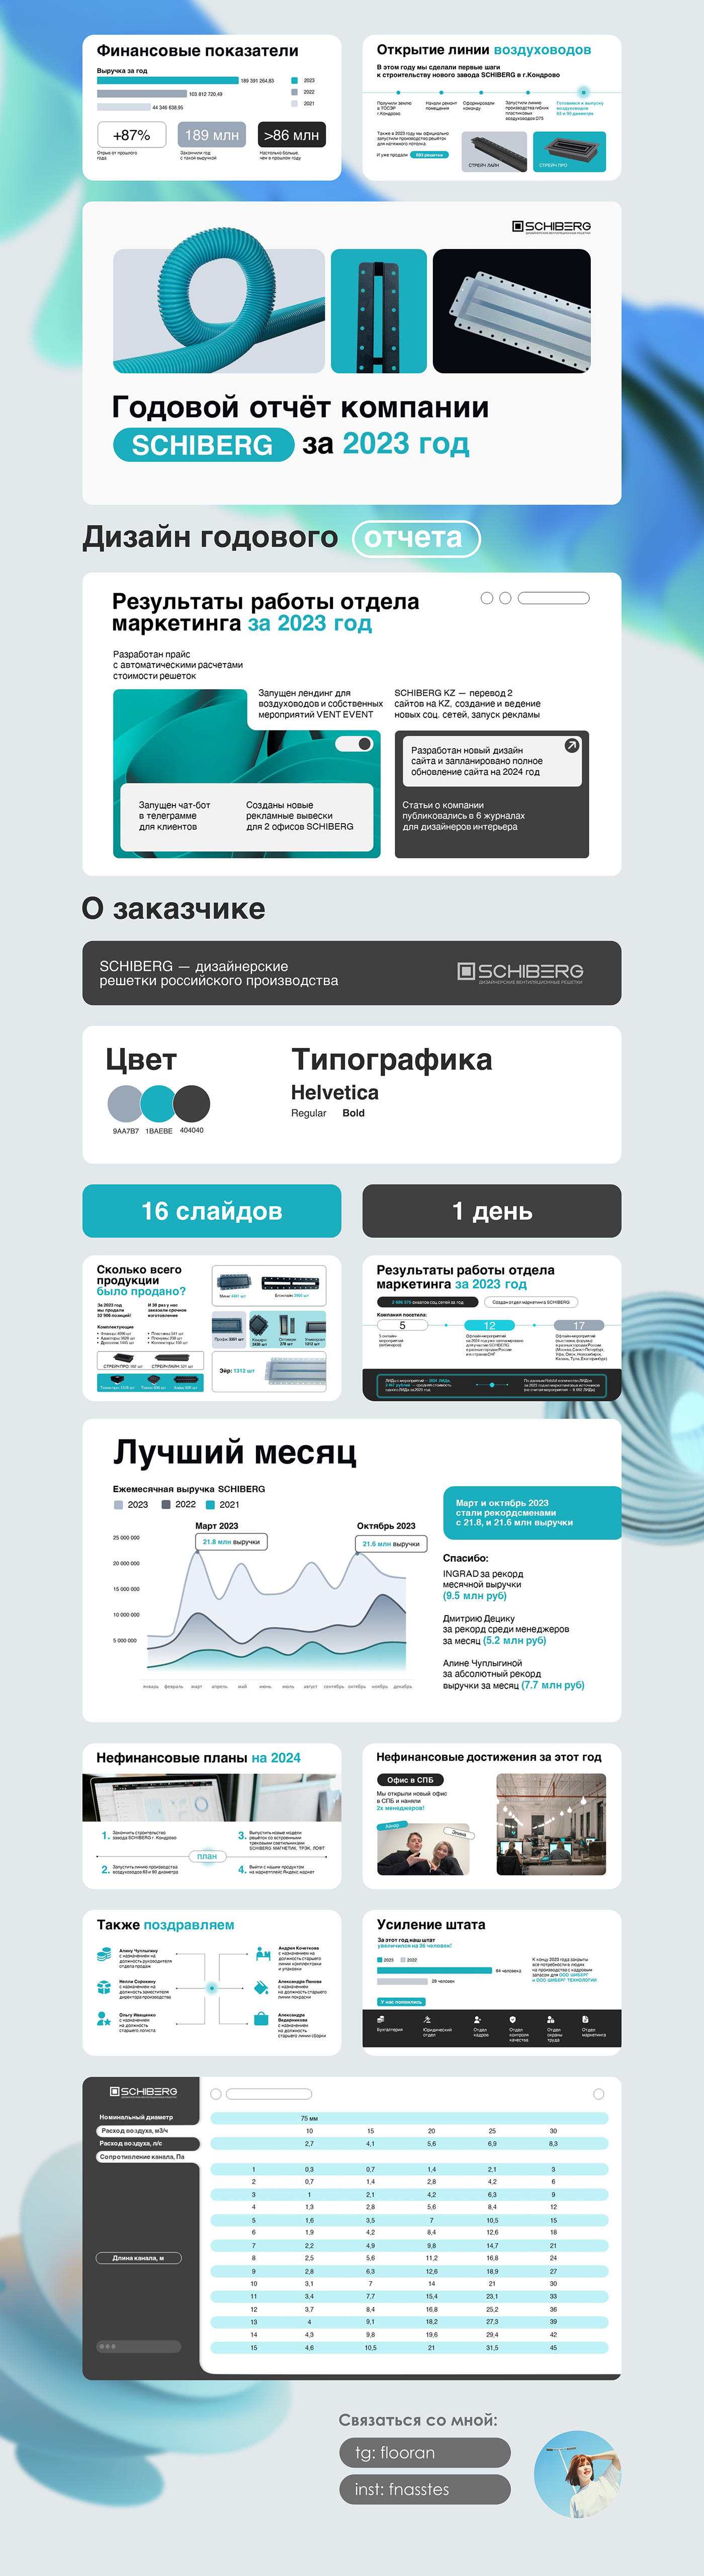 presentation design slides Web Design  inphographic presentation portfolio Portfolio Design Socialmedia Advertising  Web